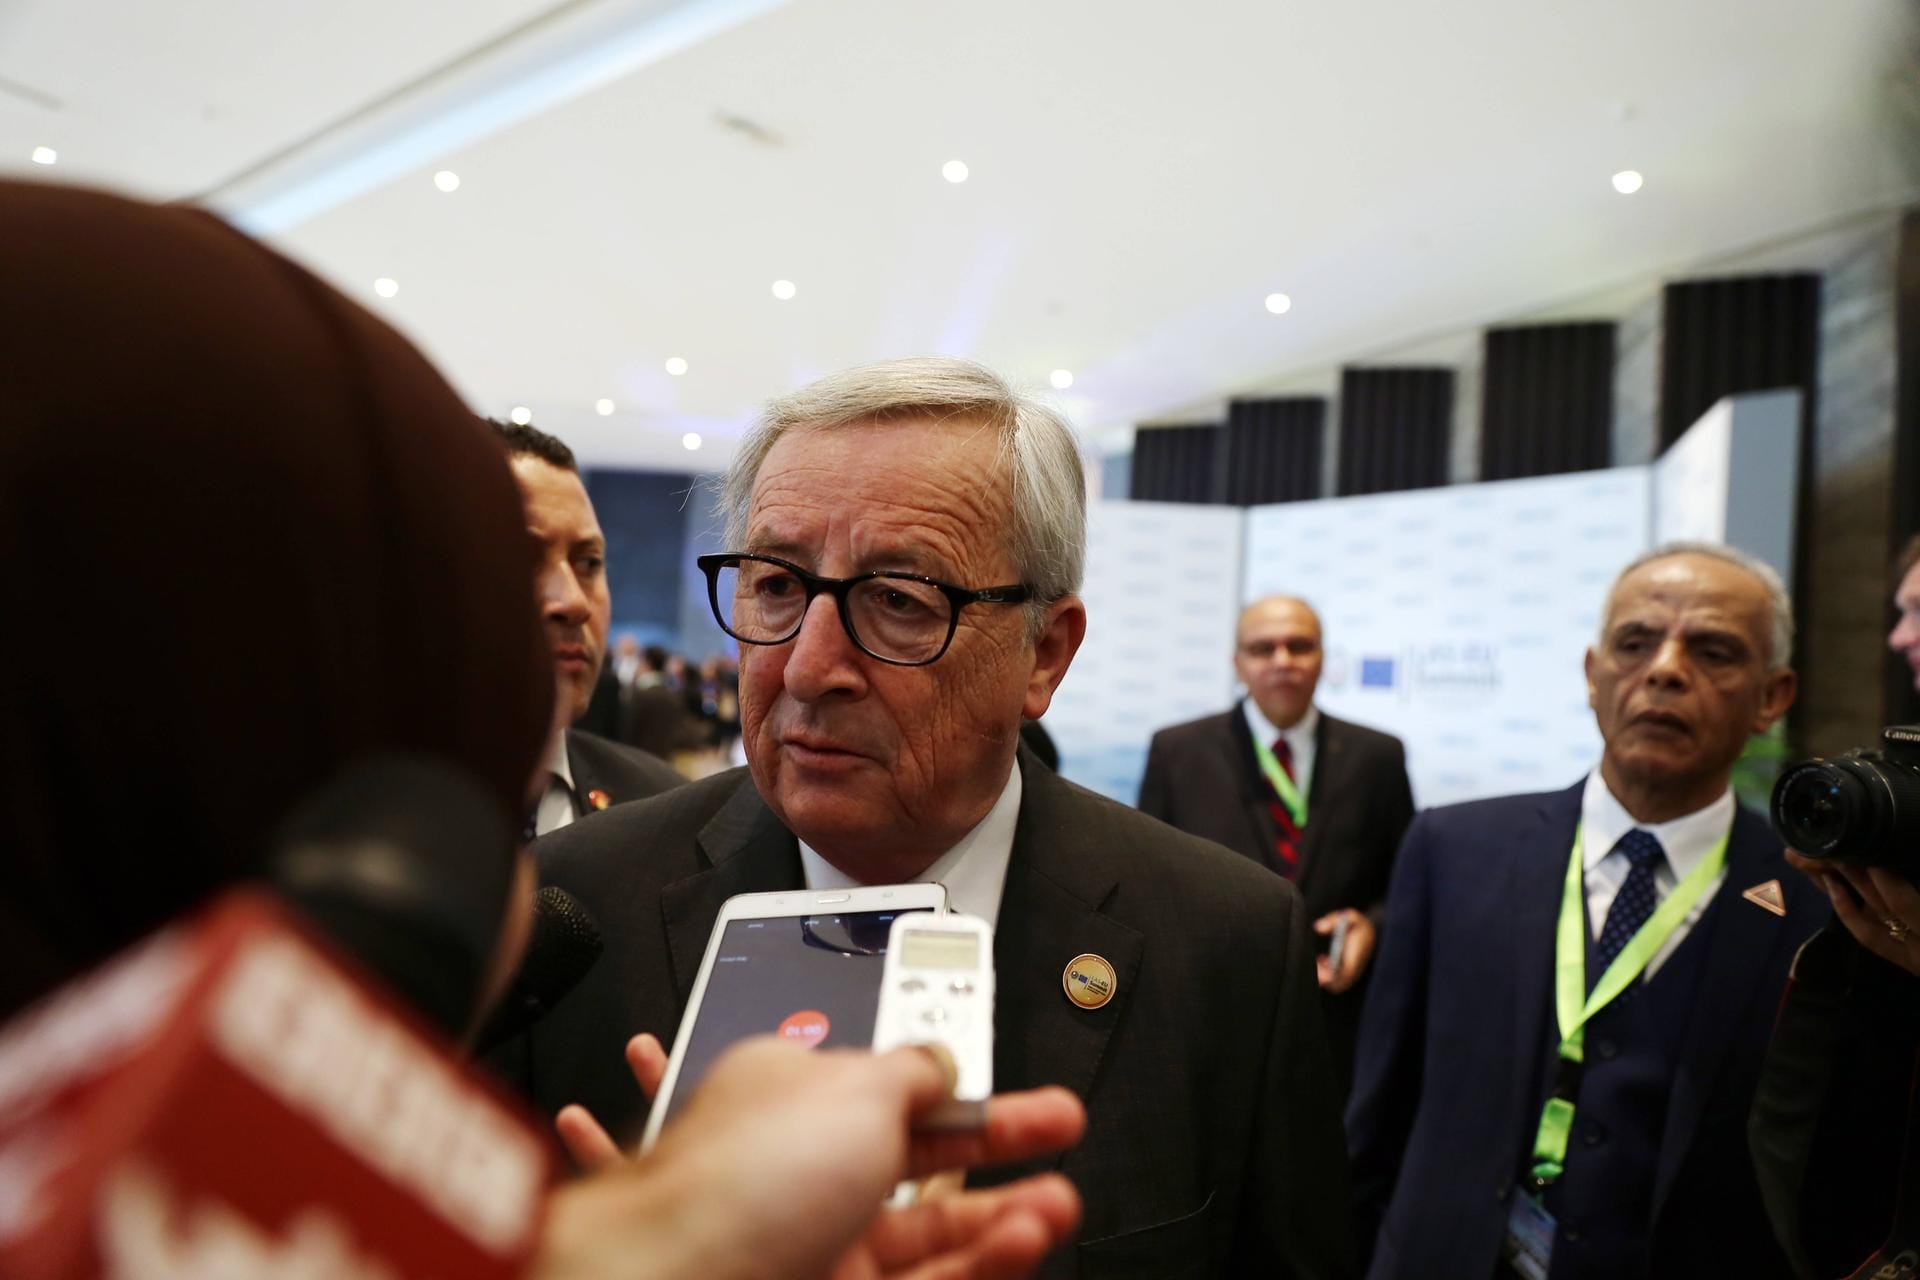 Am Telefon: Bei einer Pressekonferenz in Ägypten bimmelte plötzlich Junckers Mobiltelefon. Seine Reaktion? "Wer hat diese Dinger bloß erfunden?". Am Apparat war seine Frau. Hunderte Zuschauer sahen zu, wie er das Handy beiseite legte und sagte: "Es war nur die übliche Verdächtige"